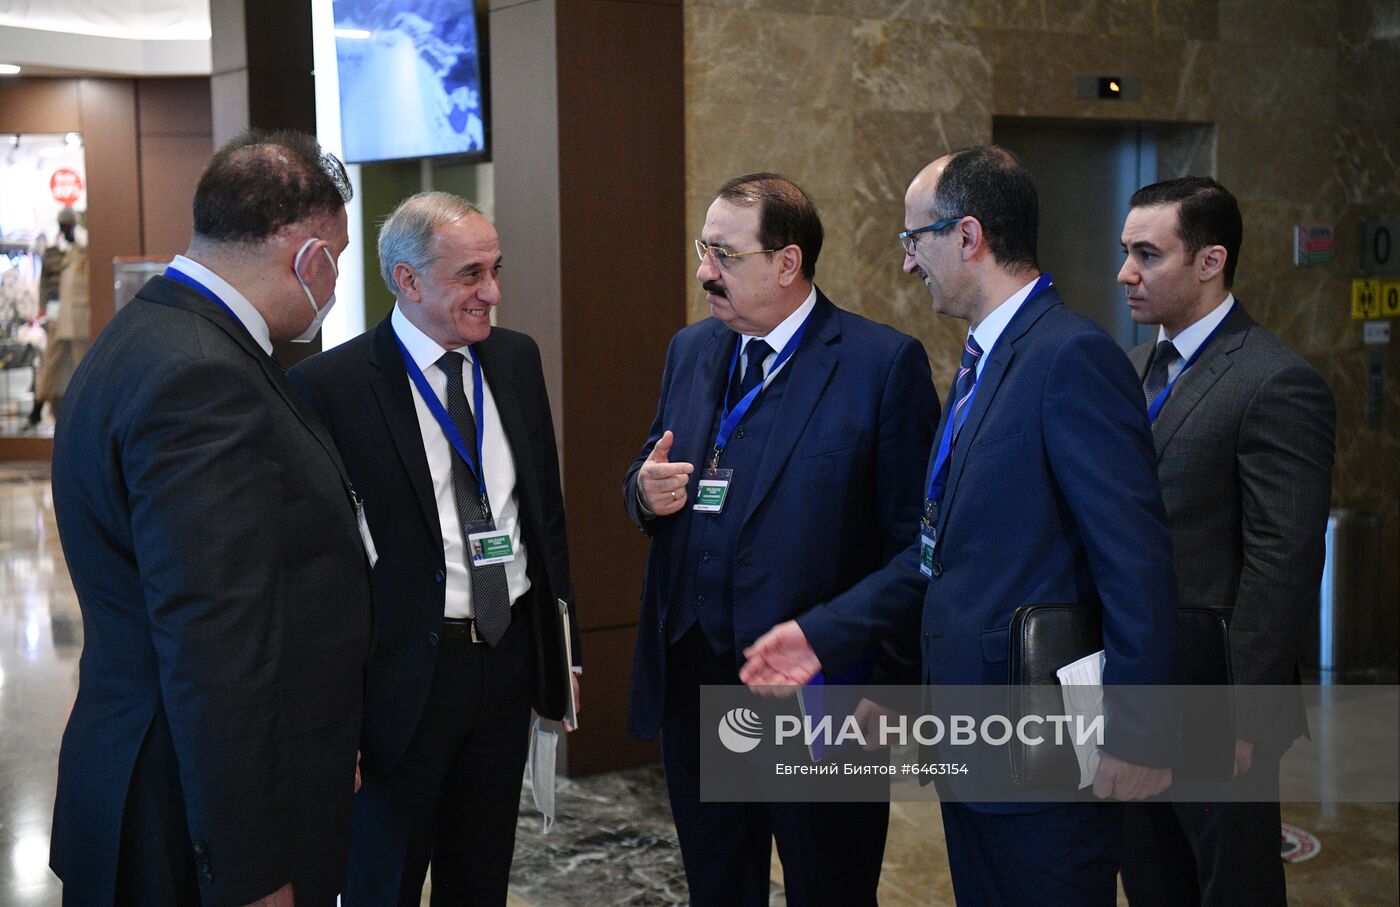 XV Международная встреча по Сирии в "астанинском формате"